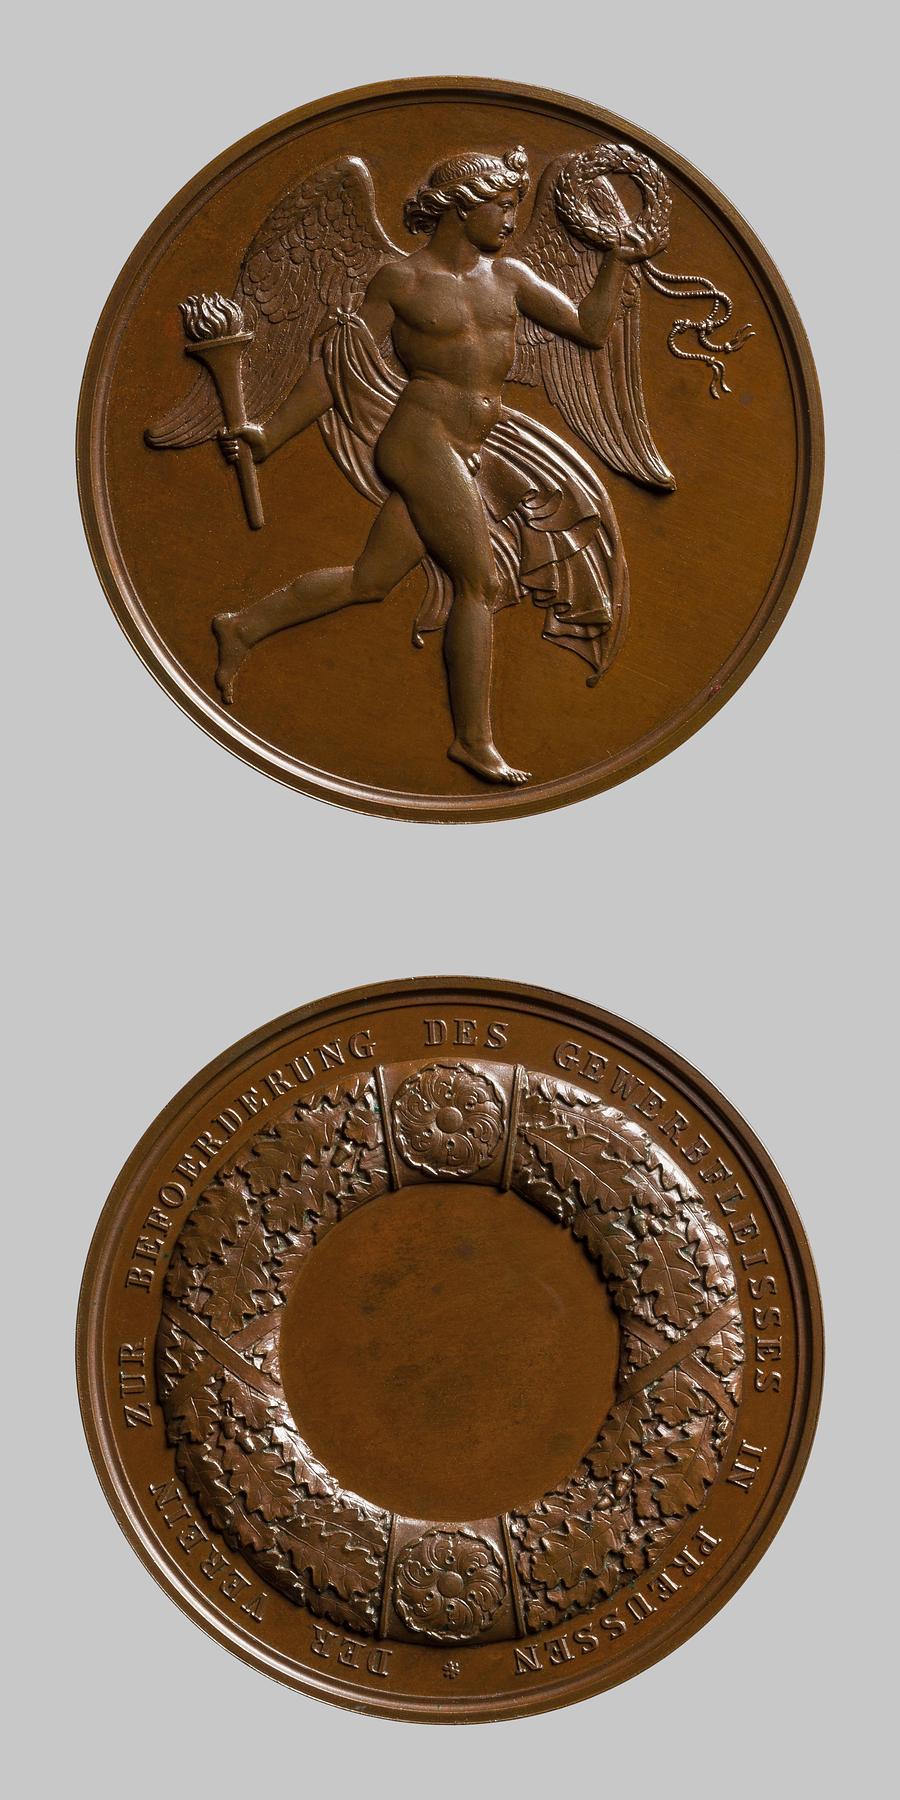 Medaljens forside: Genie med krans og fakkel. Medaljens bagside: Egekrans, F135